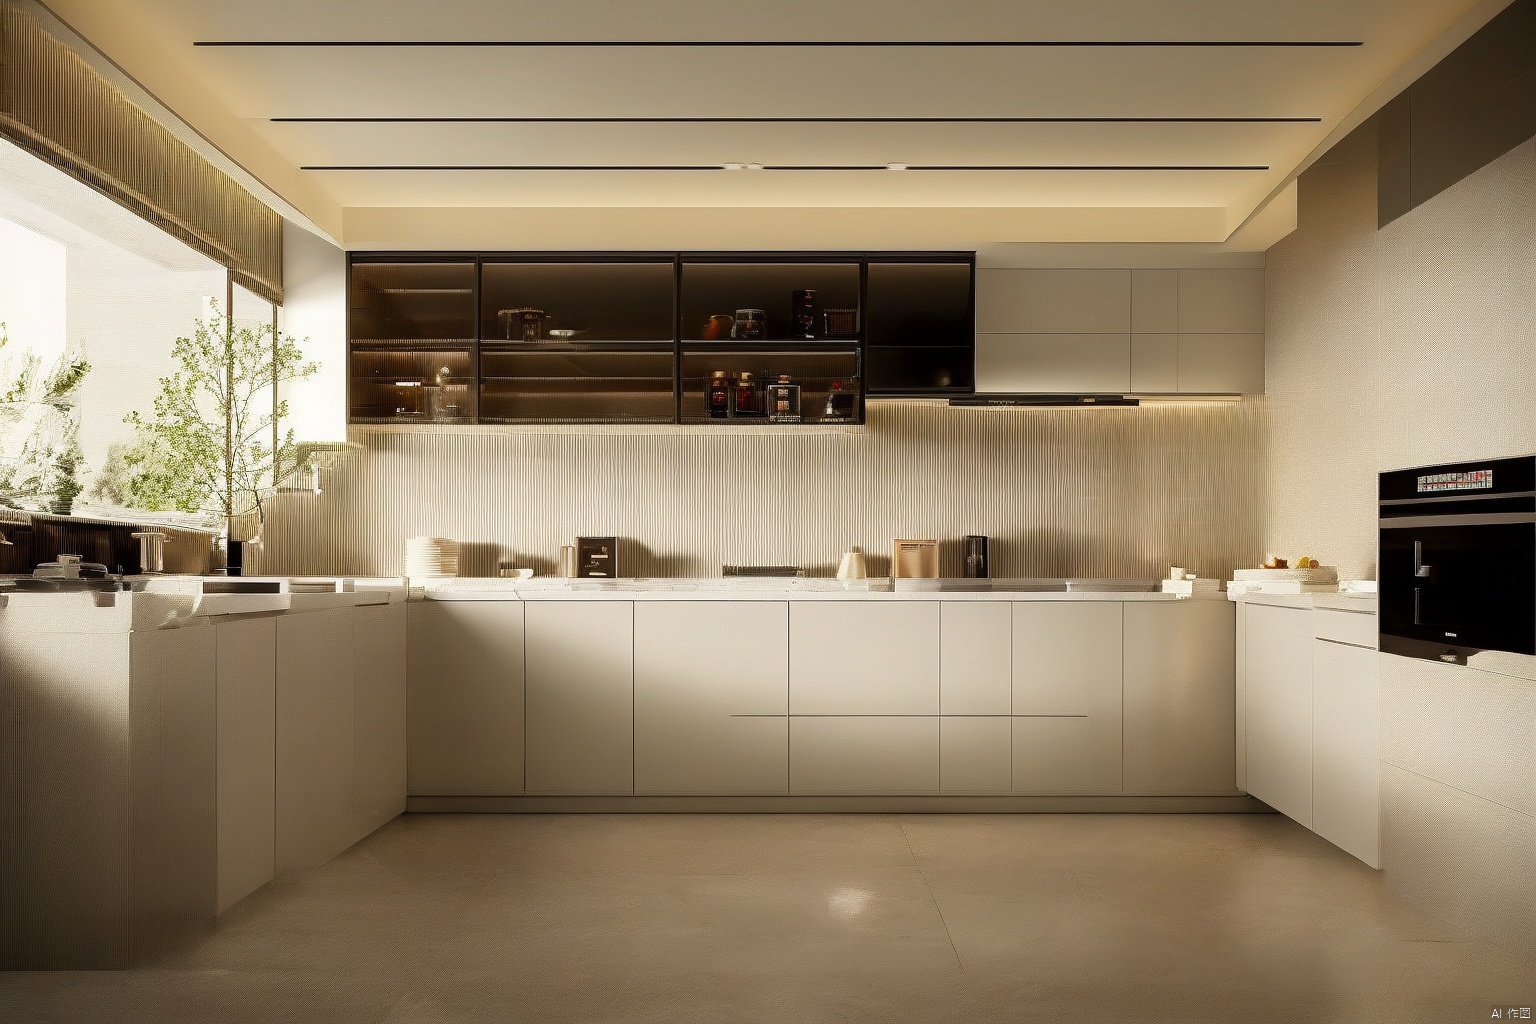 High end kitchen, cabinets, modern, minimalist, bright, natural light, high-definition, kitchenware, windows desktop